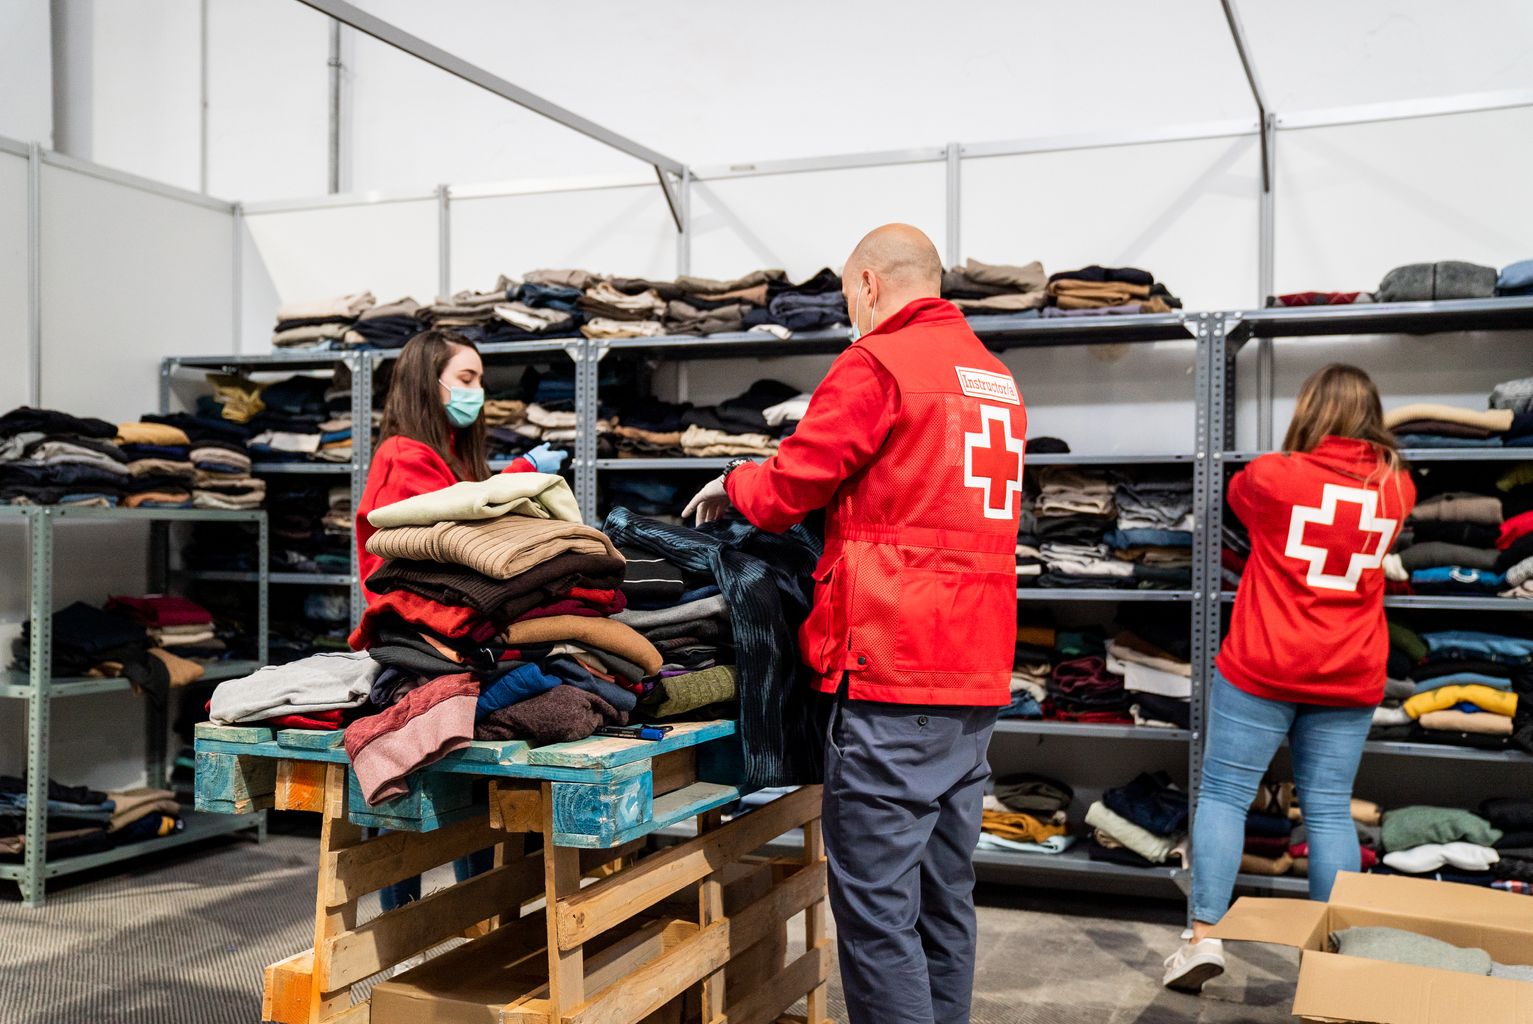 Membres de la Creu Roja organitzen la roba i les sabates que els han arribat al pavelló per a persones sense llar